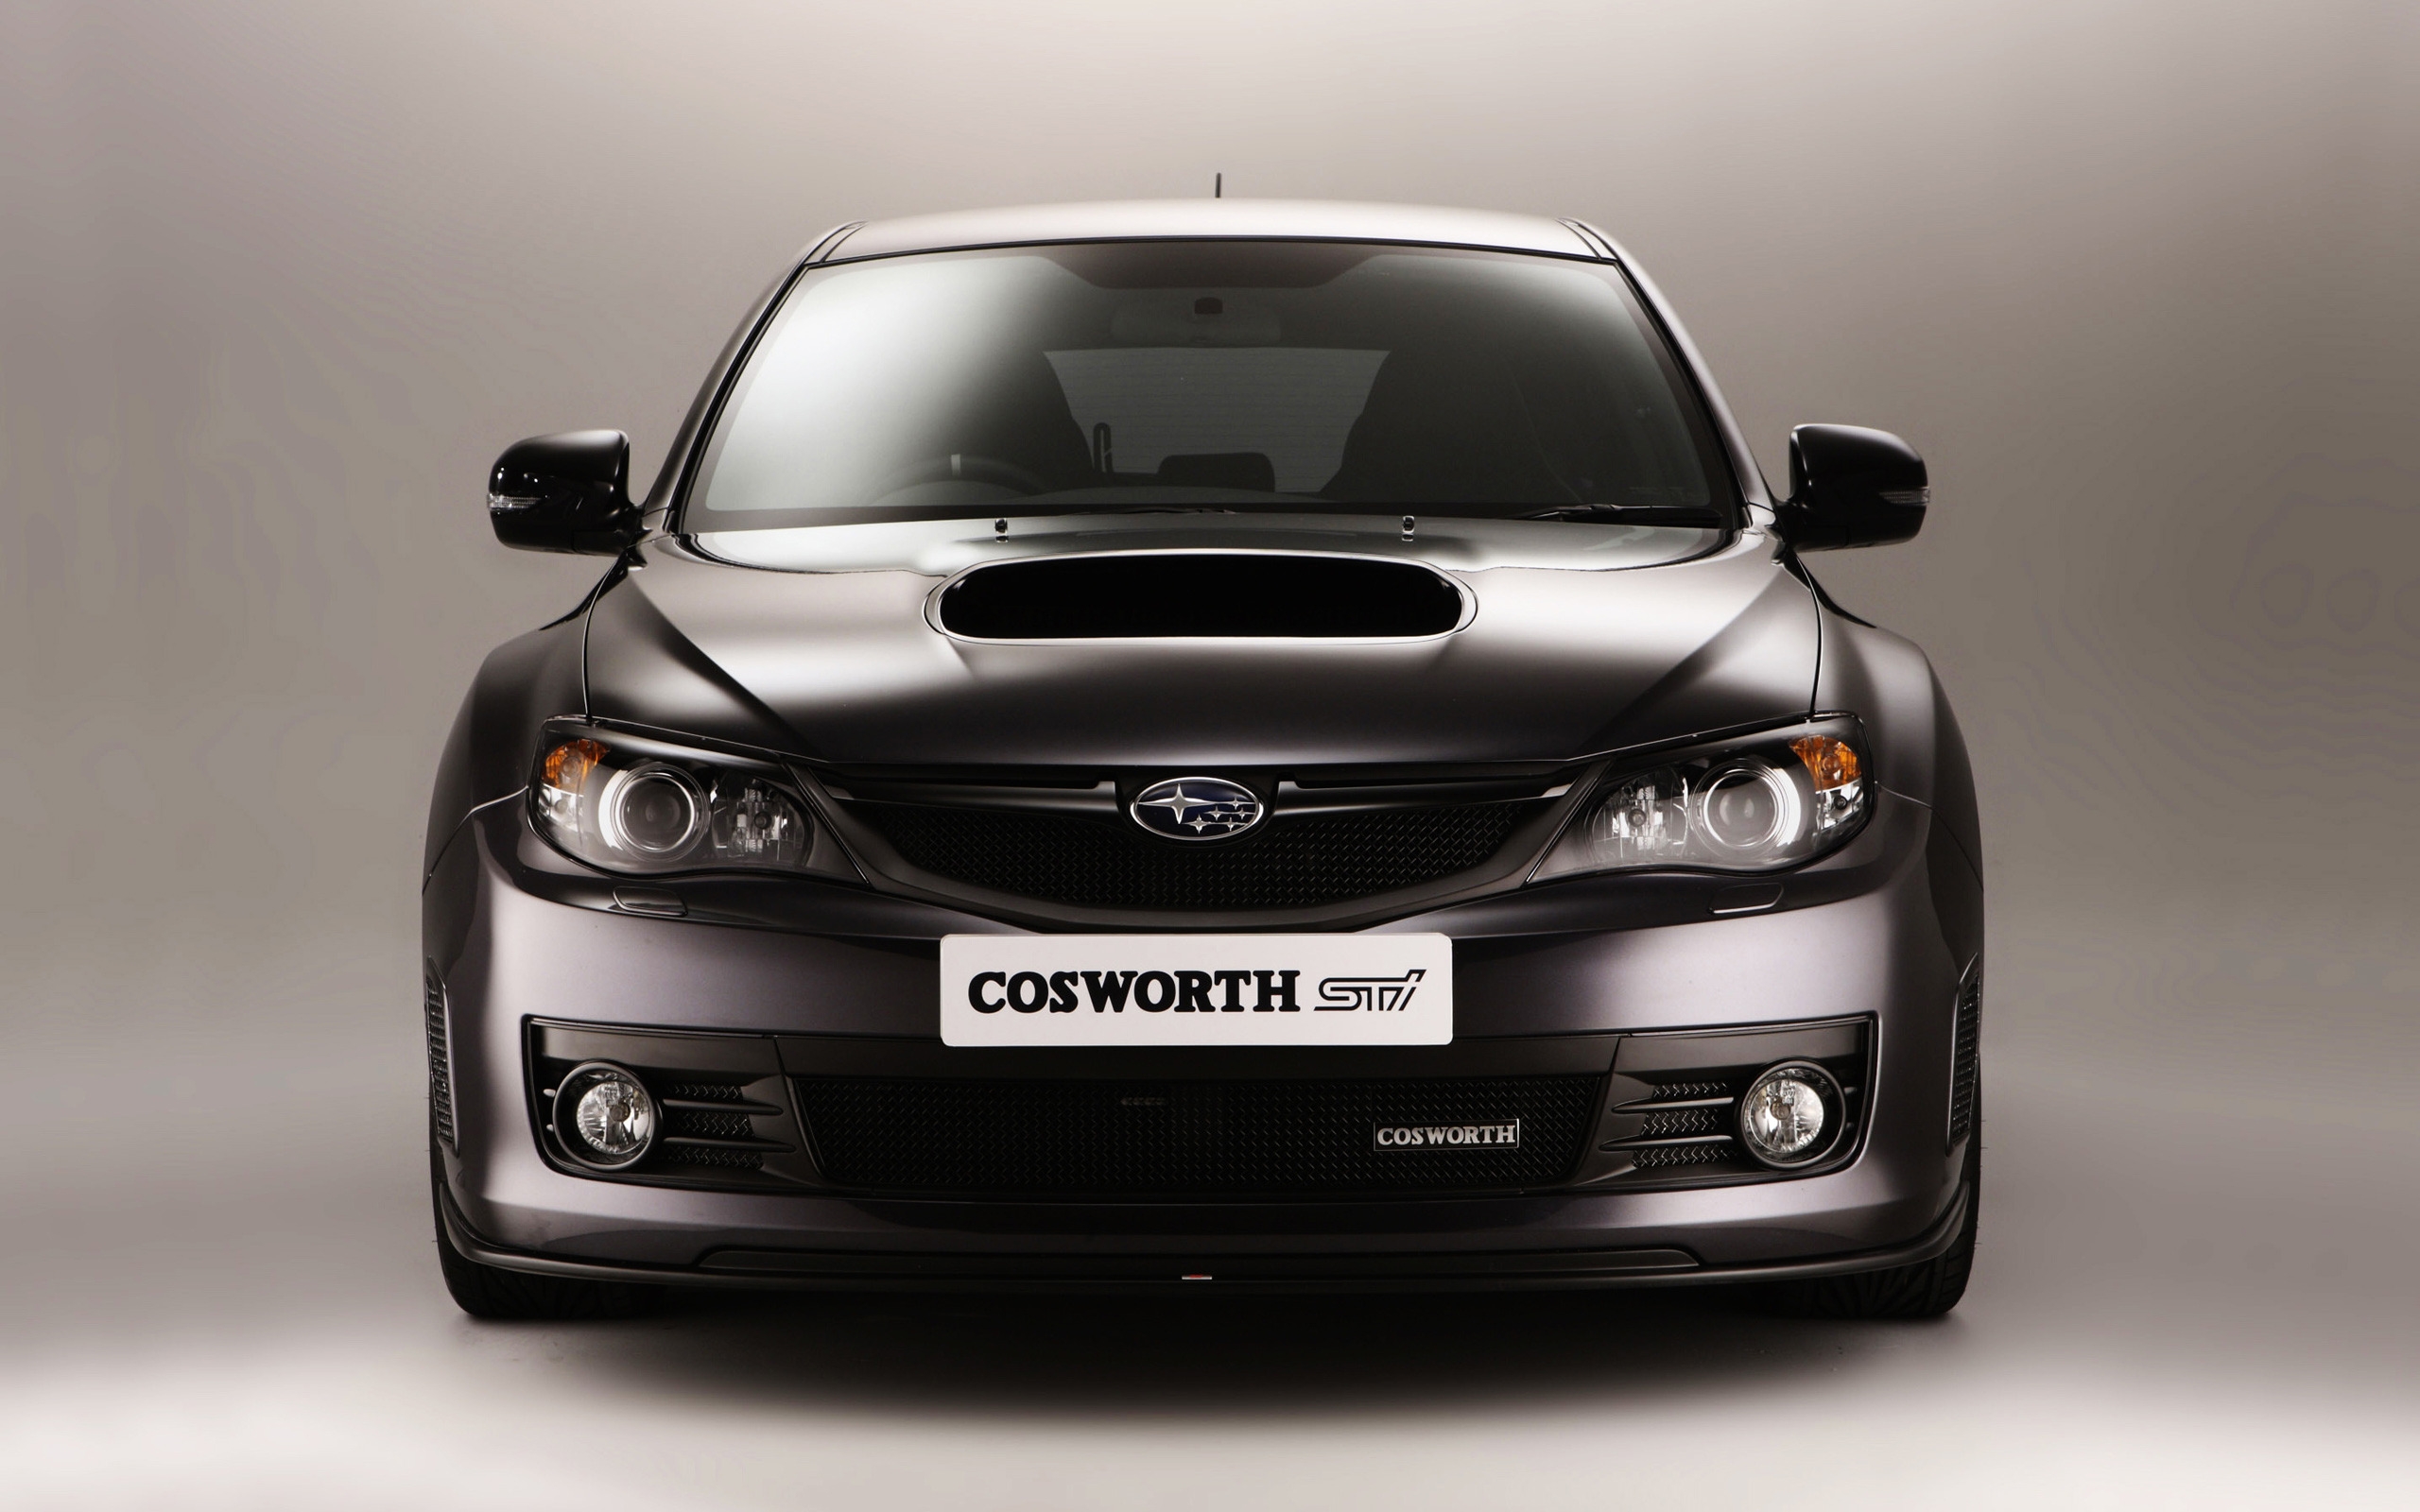 Subaru Cosworth Impreza for 2560 x 1600 widescreen resolution